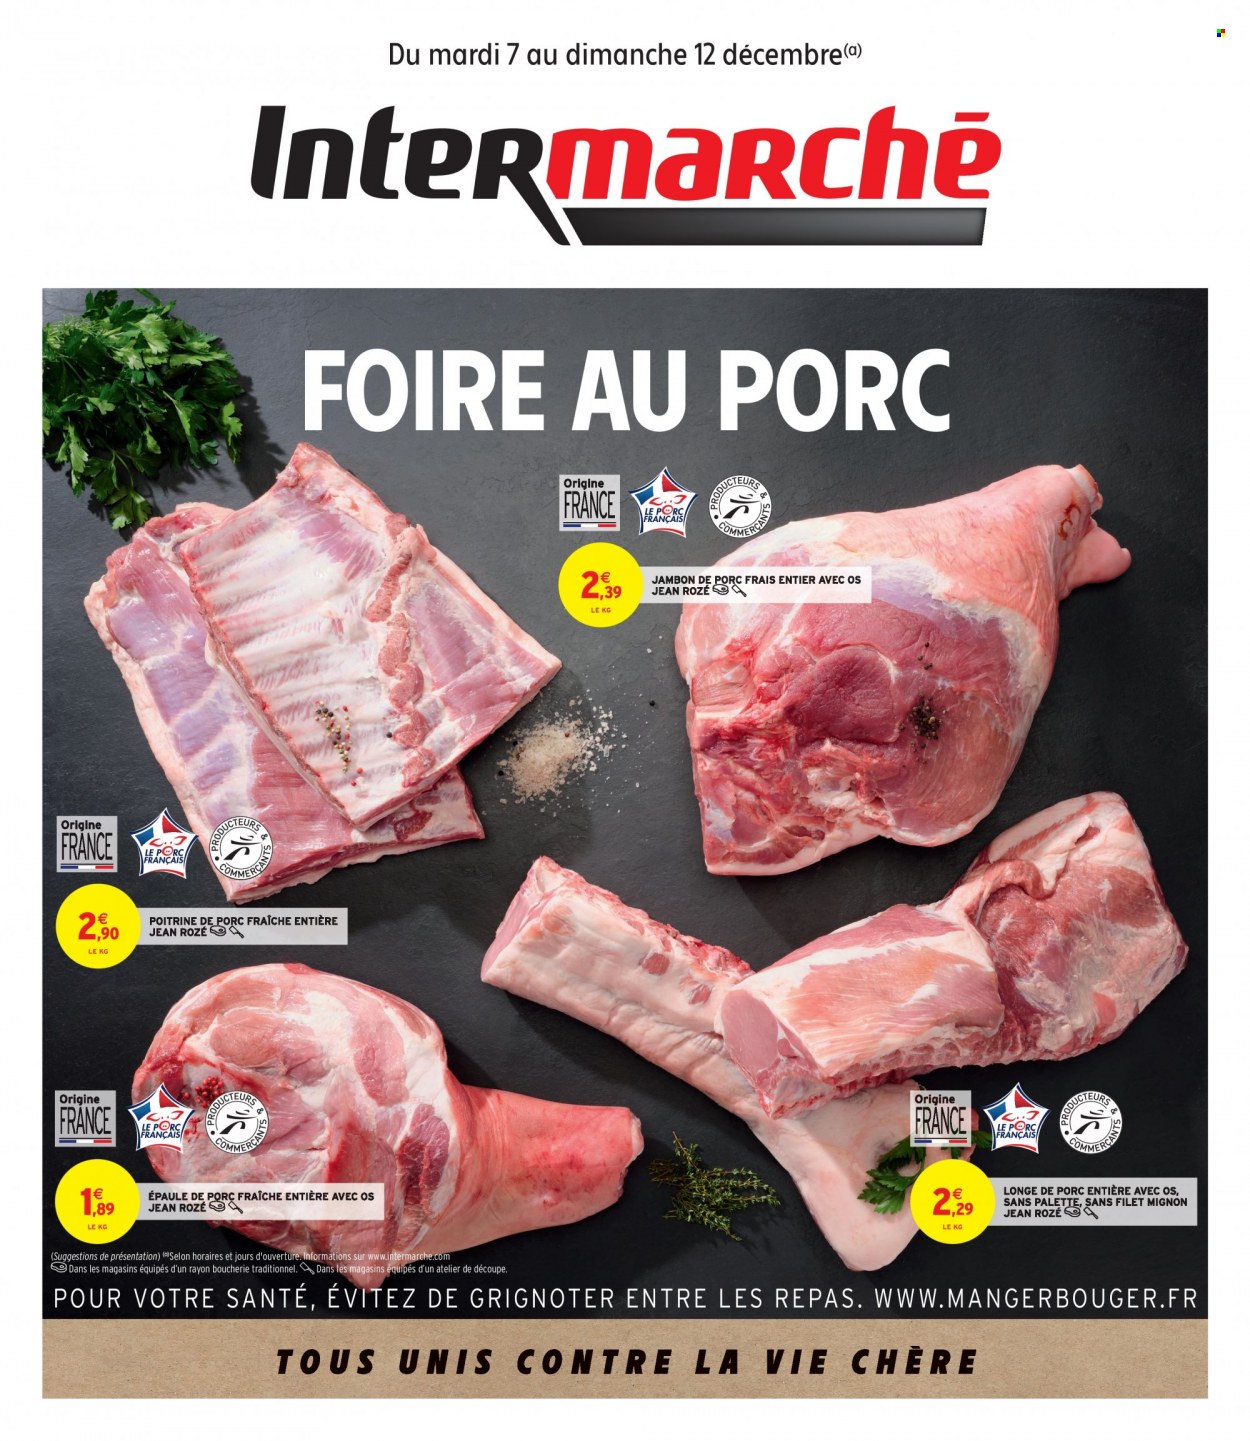 thumbnail - Catalogue Intermarché - 07/12/2021 - 12/12/2021 - Produits soldés - filet mignon, poitrine de porc, viande de porc, longe de porc, jambon, Palette. Page 1.